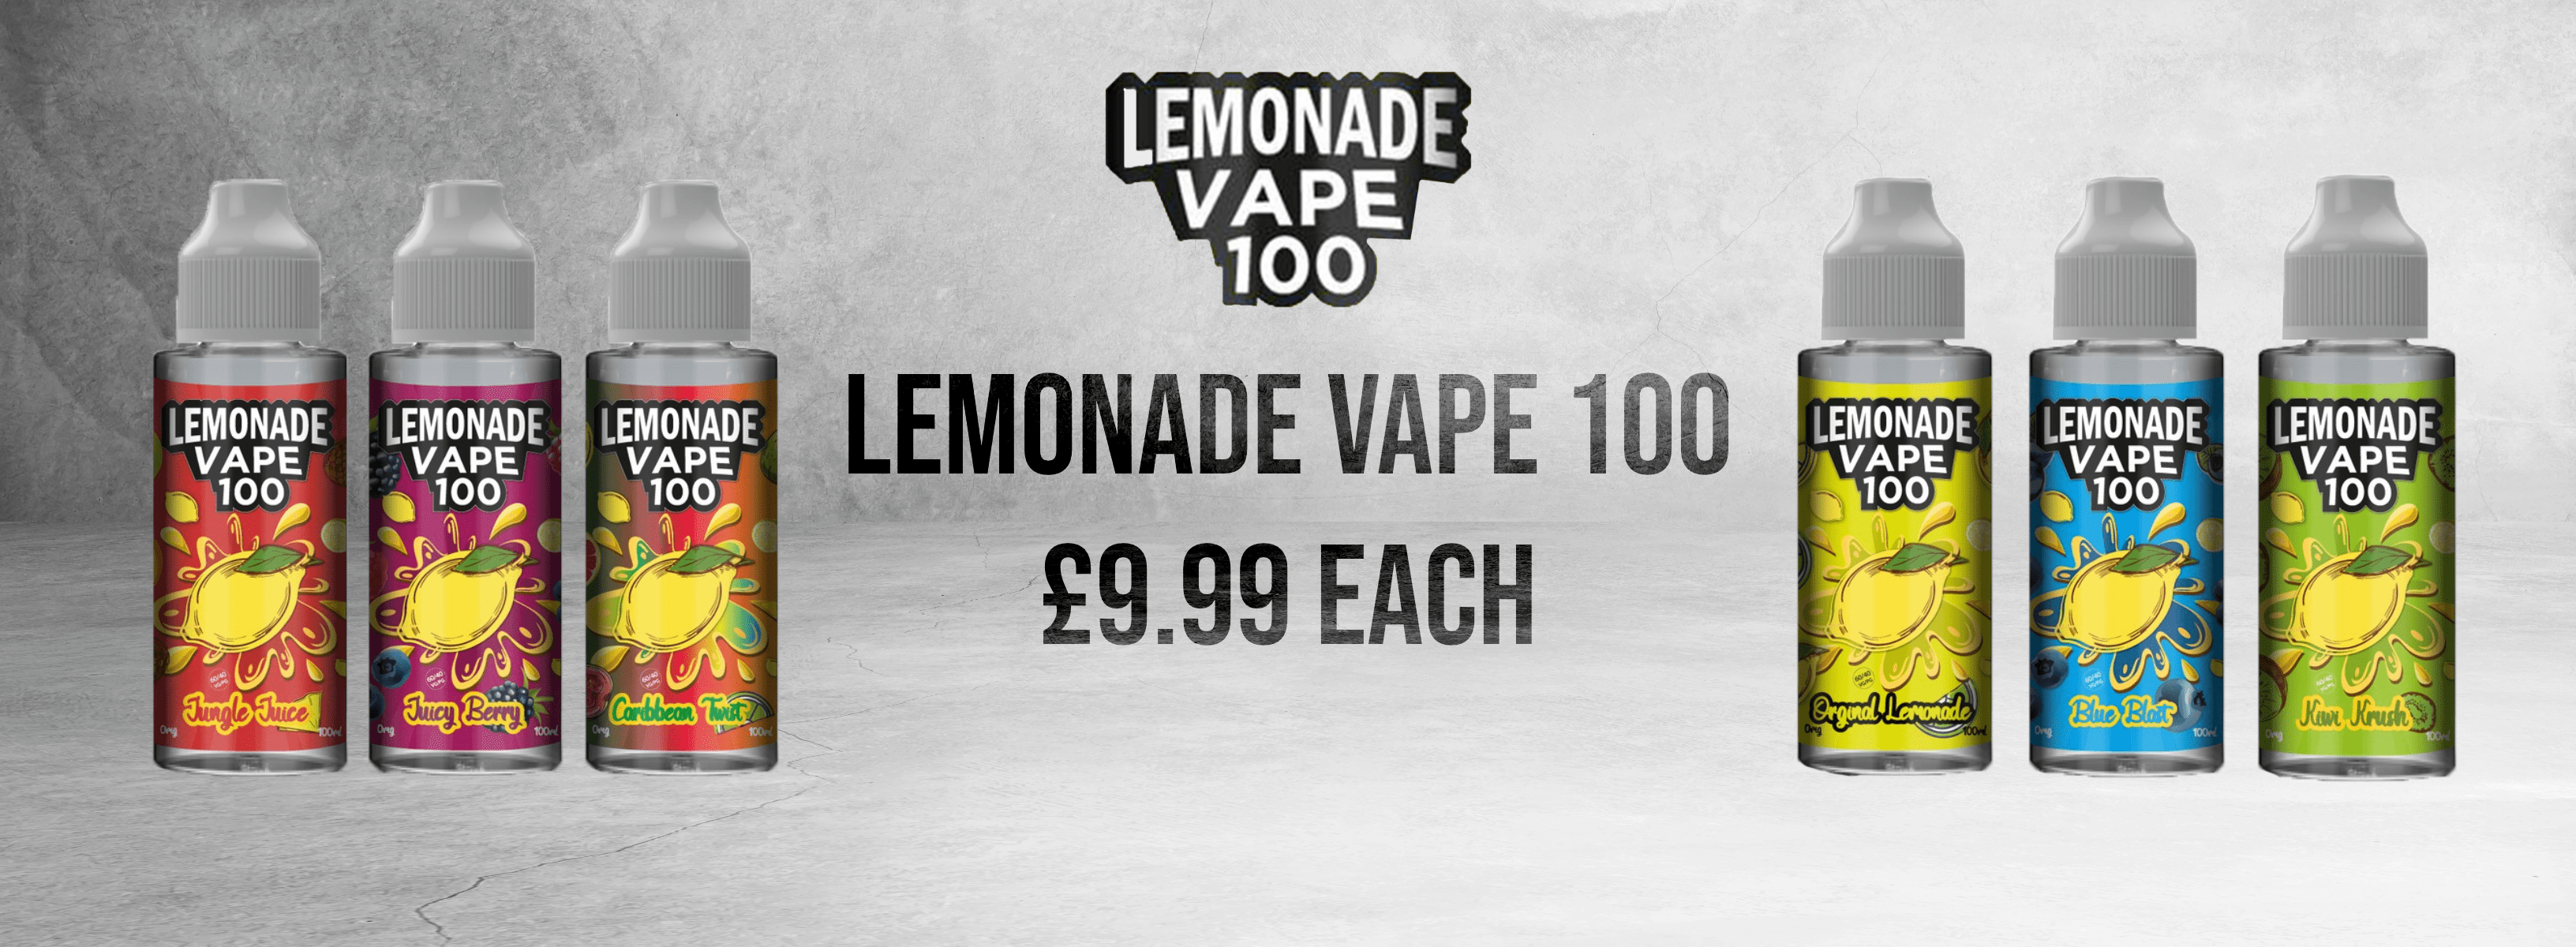 Advert for Lemonade Vape 100